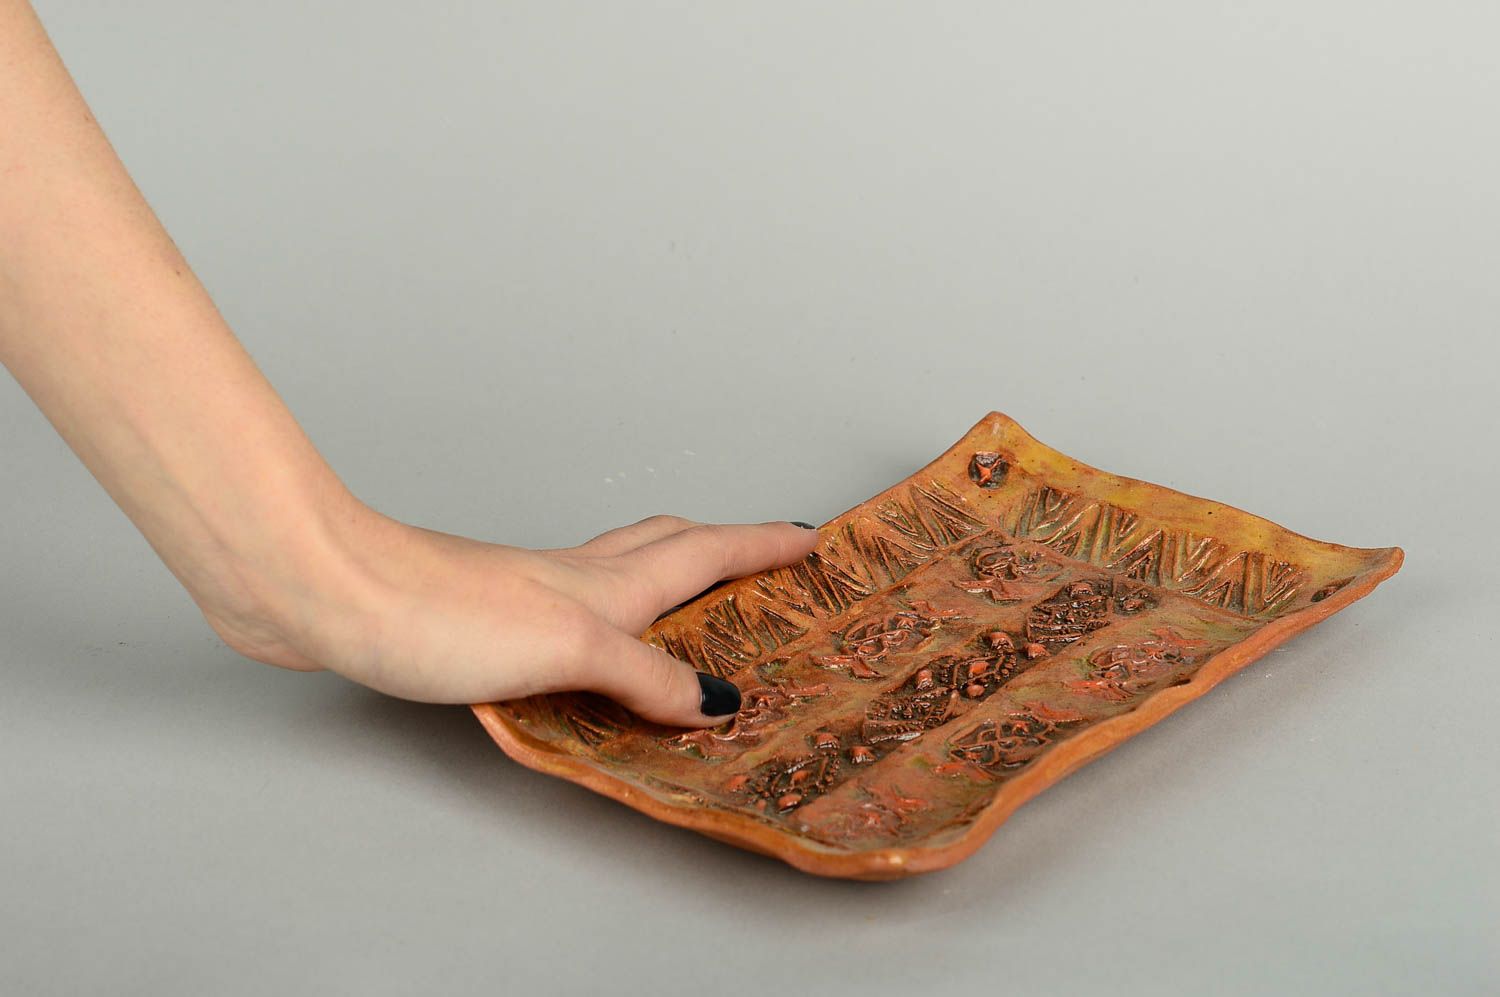 Plato de cerámica rectangular hecho a mano vajilla ecológica menaje de cocina foto 2